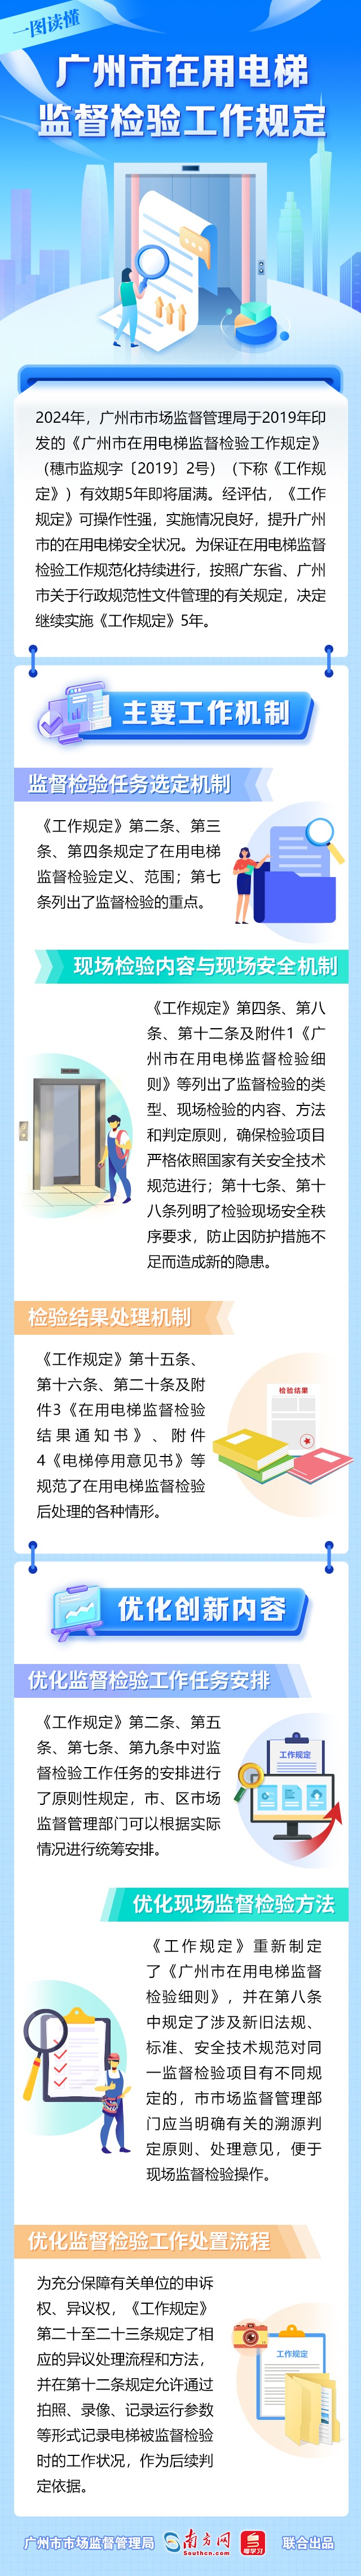 一图读懂《广州市在用电梯监督检验工作规定》